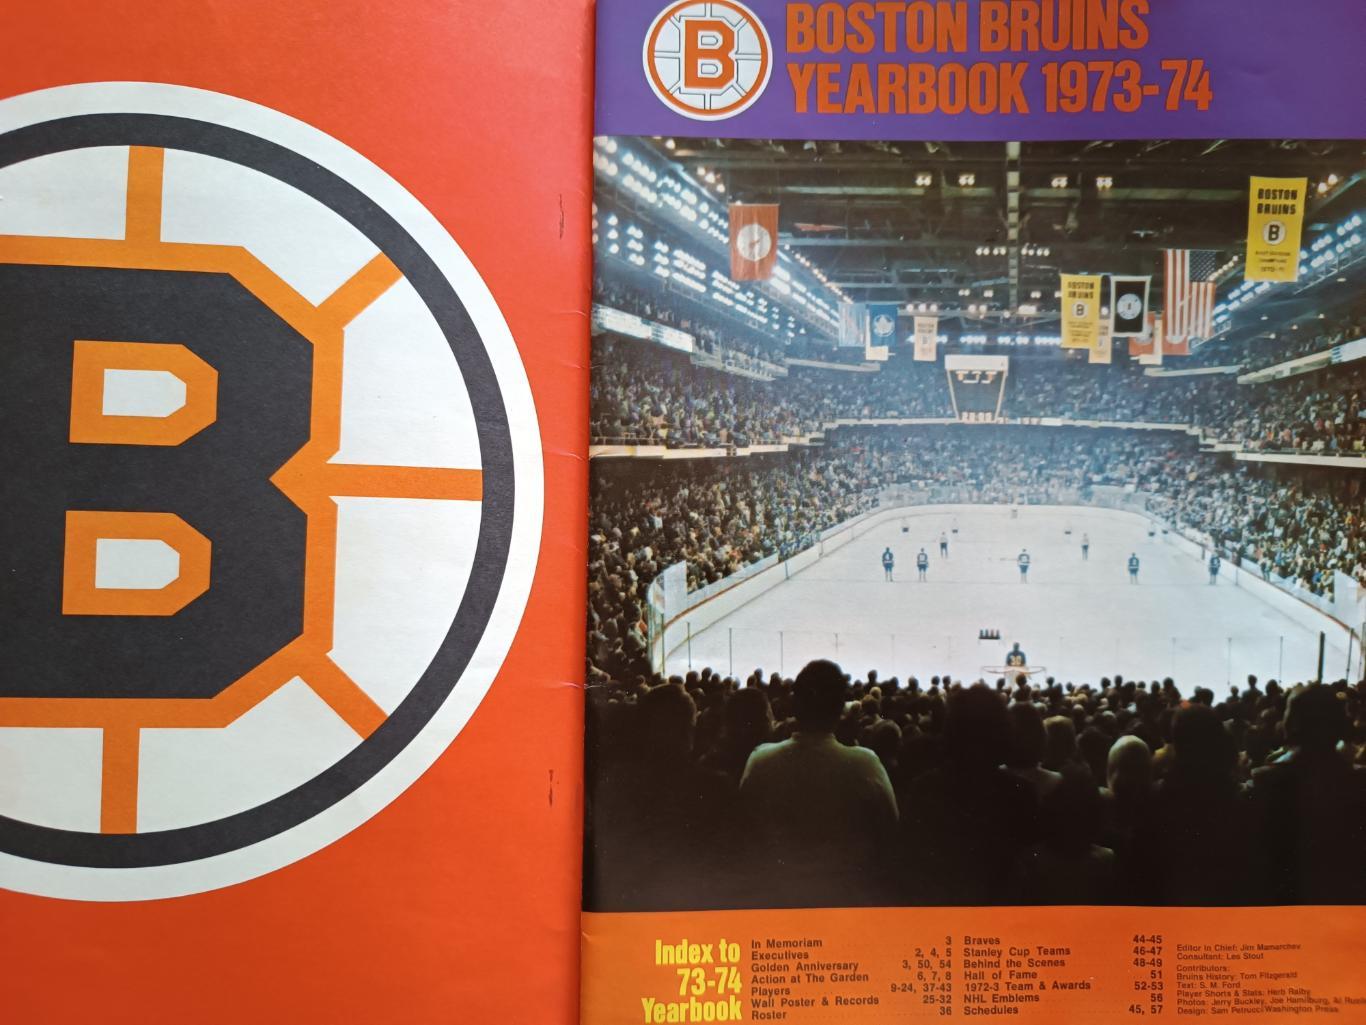 ХОККЕЙ АЛЬБОМ ЕЖЕГОДНИК НХЛ БОСТОН БРЮИНЗ 1973-74 NHL YEARBOOK BOSTON BRUINS 1